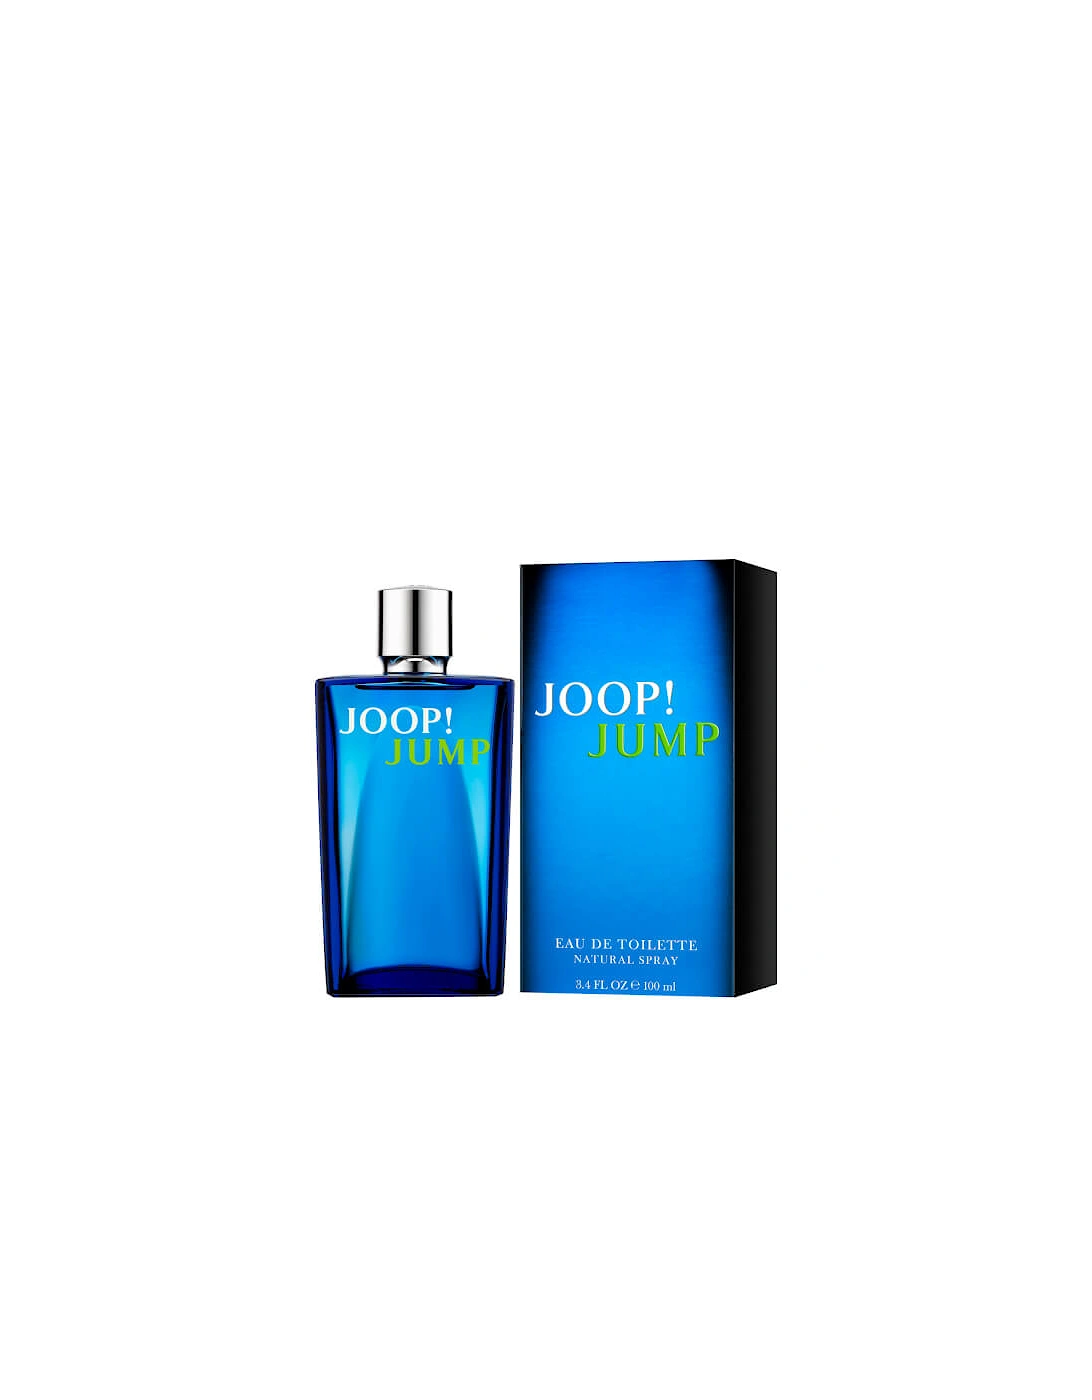 JOOP! Jump Eau de Toilette 100ml - JOOP!, 2 of 1